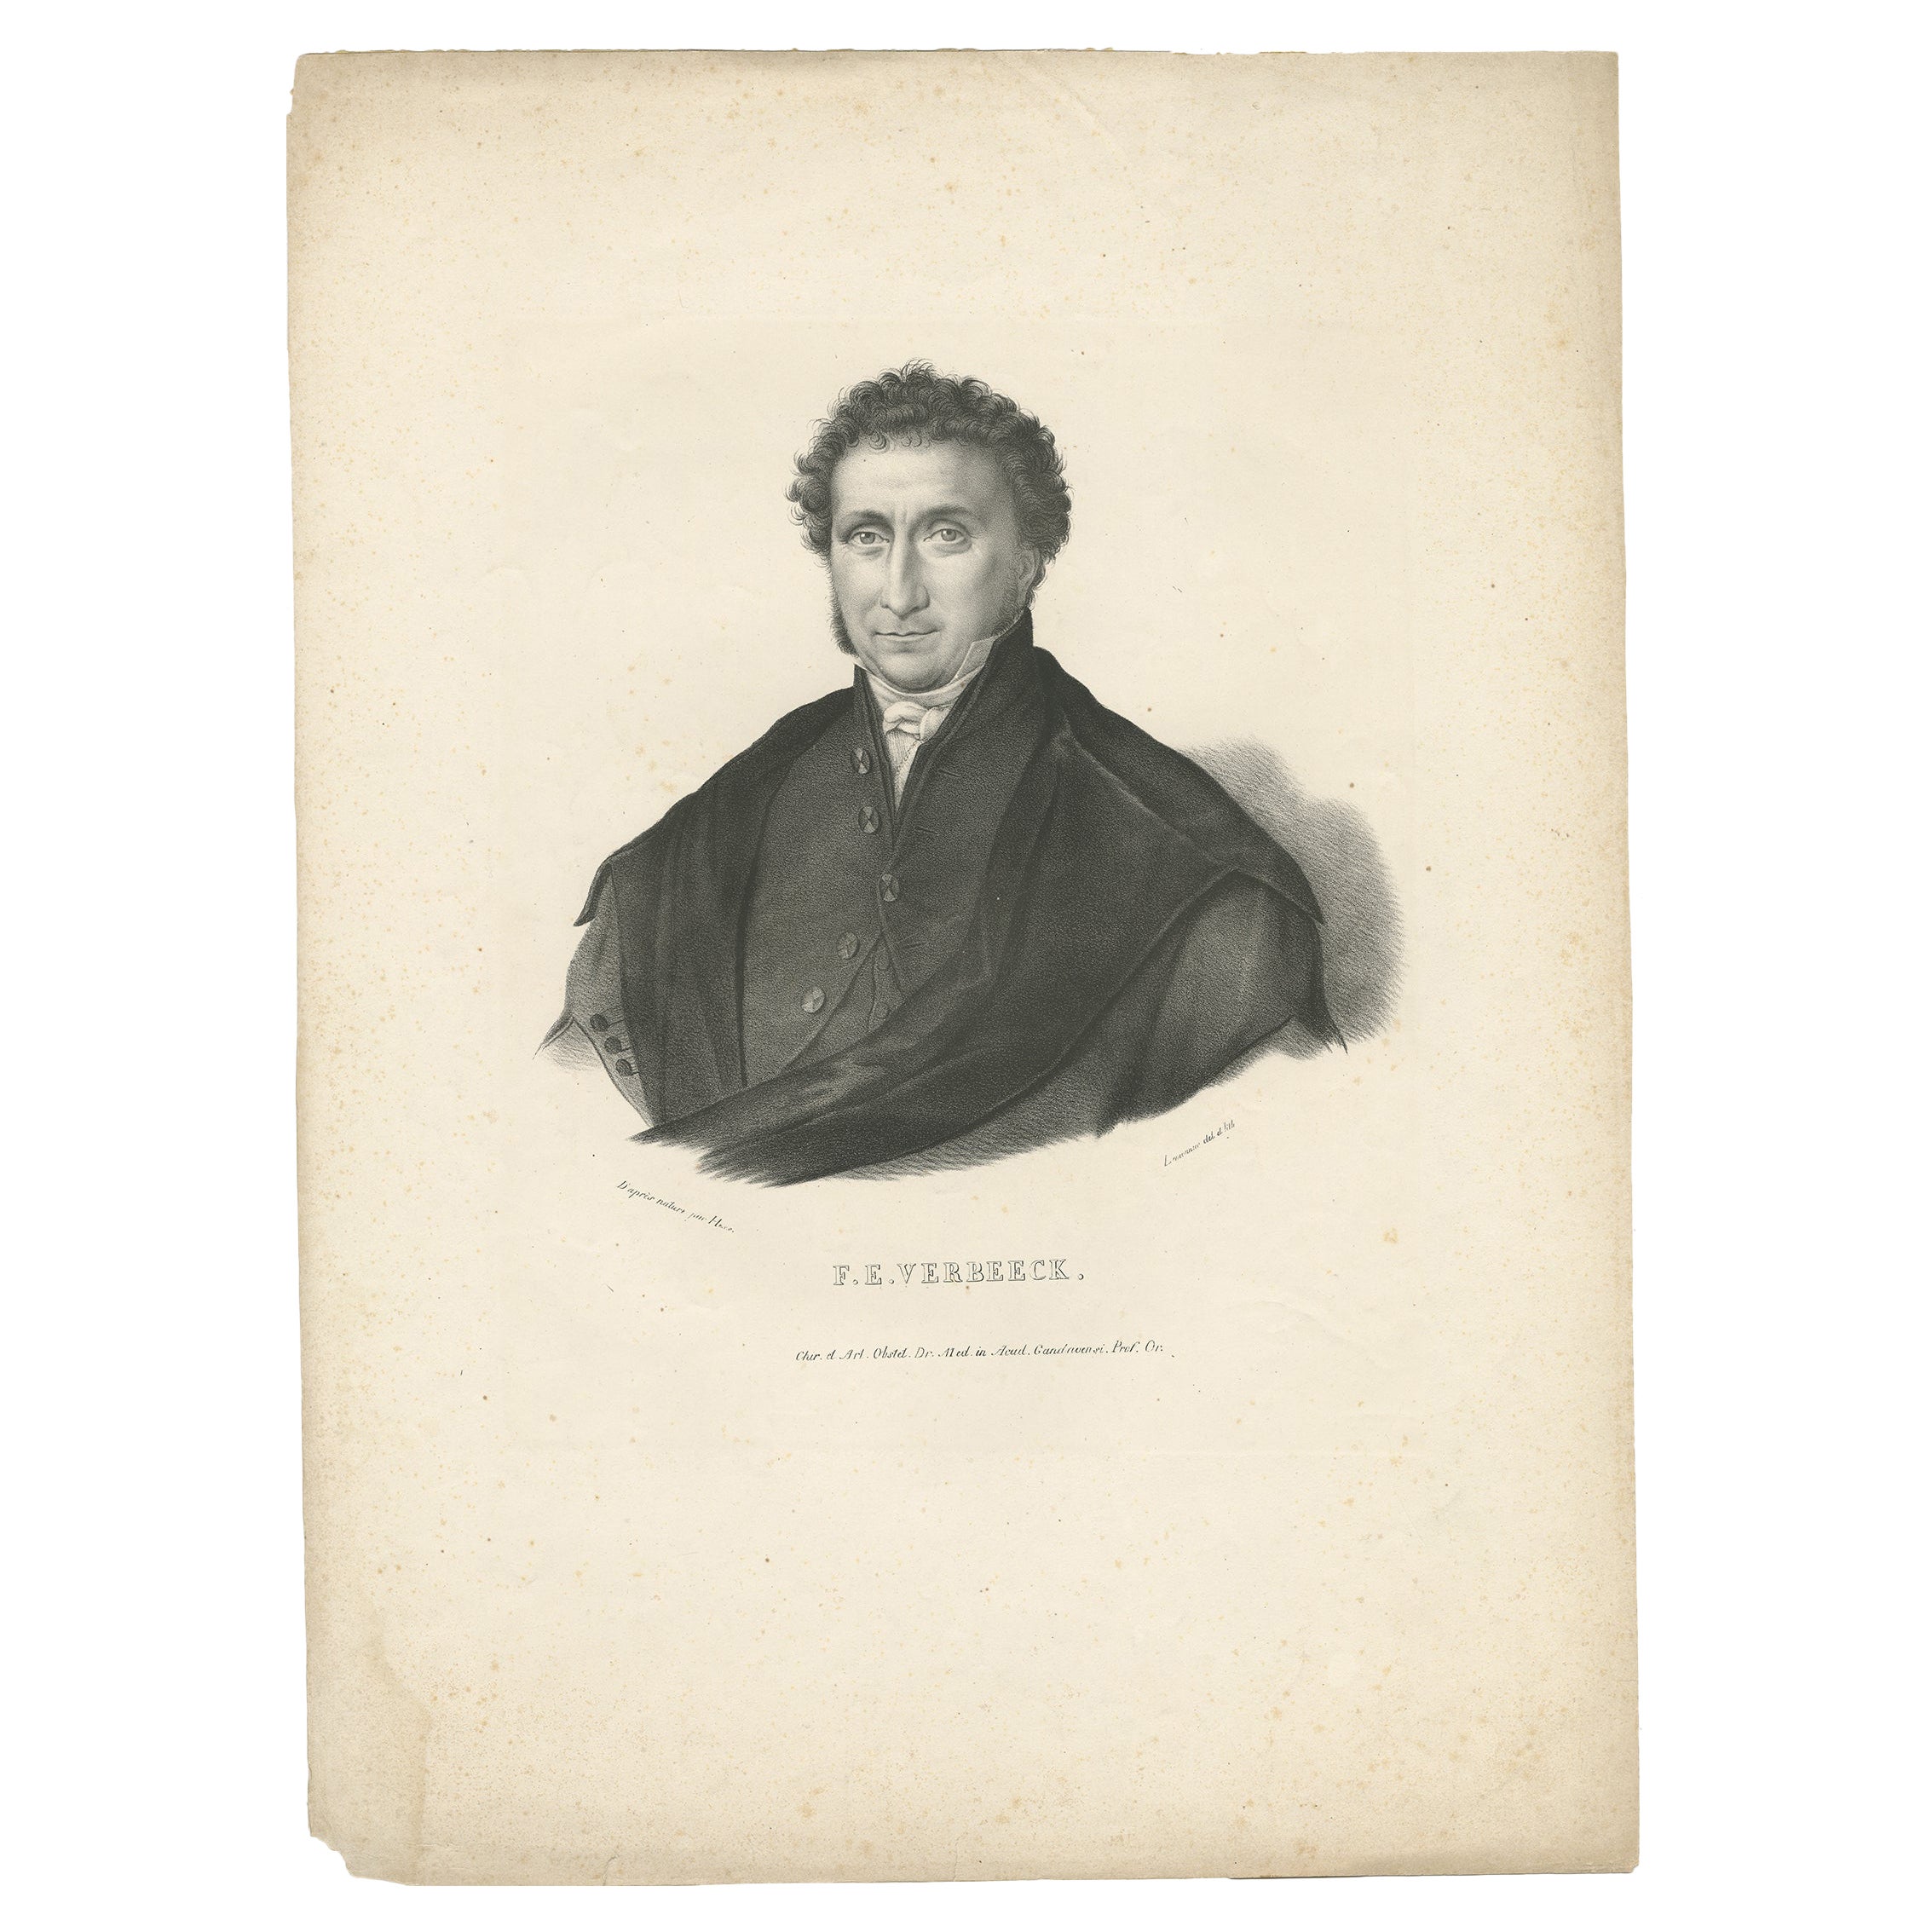 Antique Portrait of F.E. Verbeeck by Lemonnier, c.1840